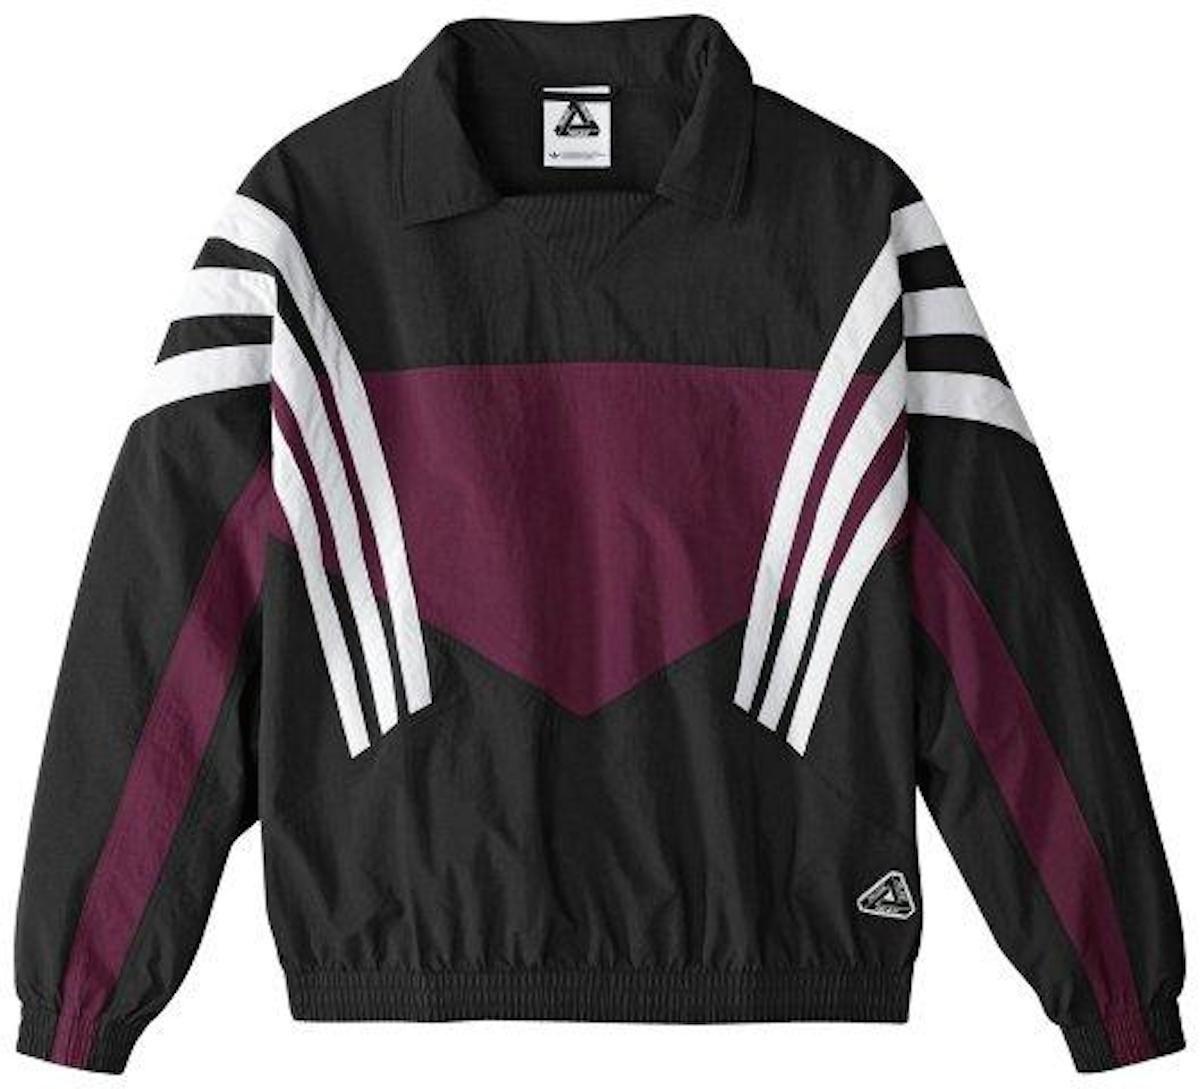 Adidas X Palace Clothing Logo - Adidas x Palace Track JAcket. Jackets. Adidas, Jackets